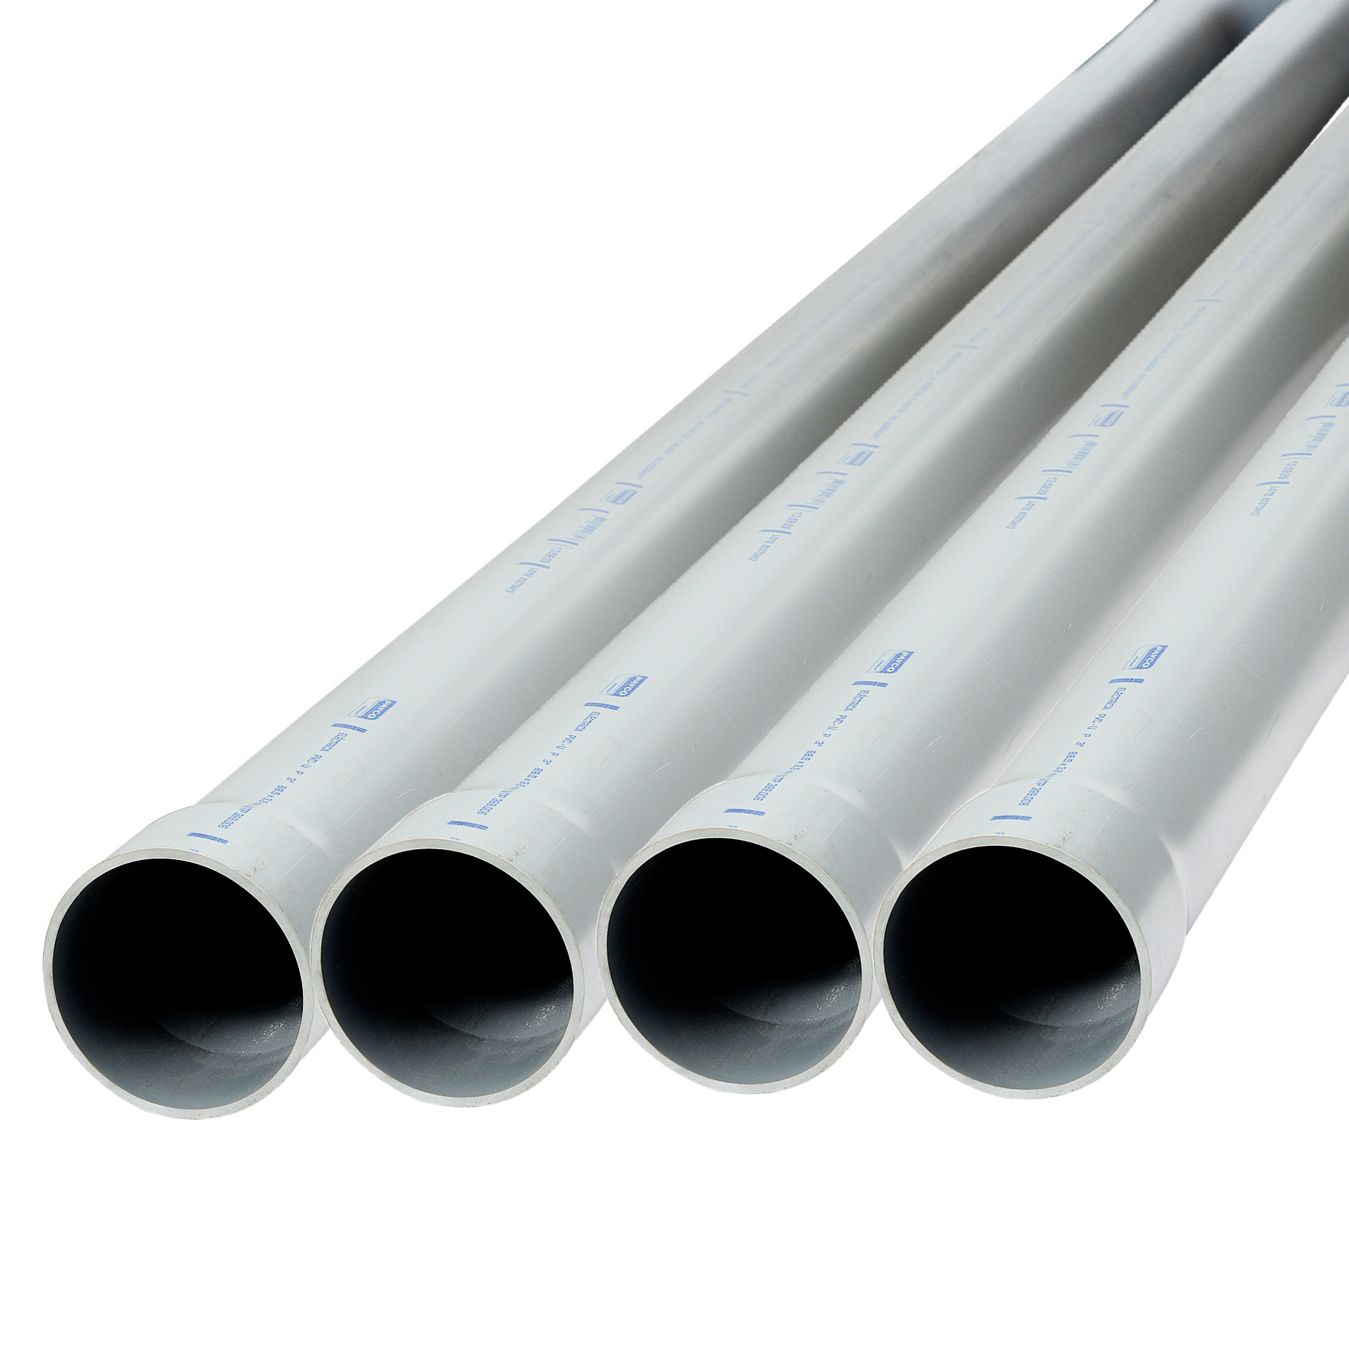 Medición de tubos (tuberías/conductos) de plástico industriales